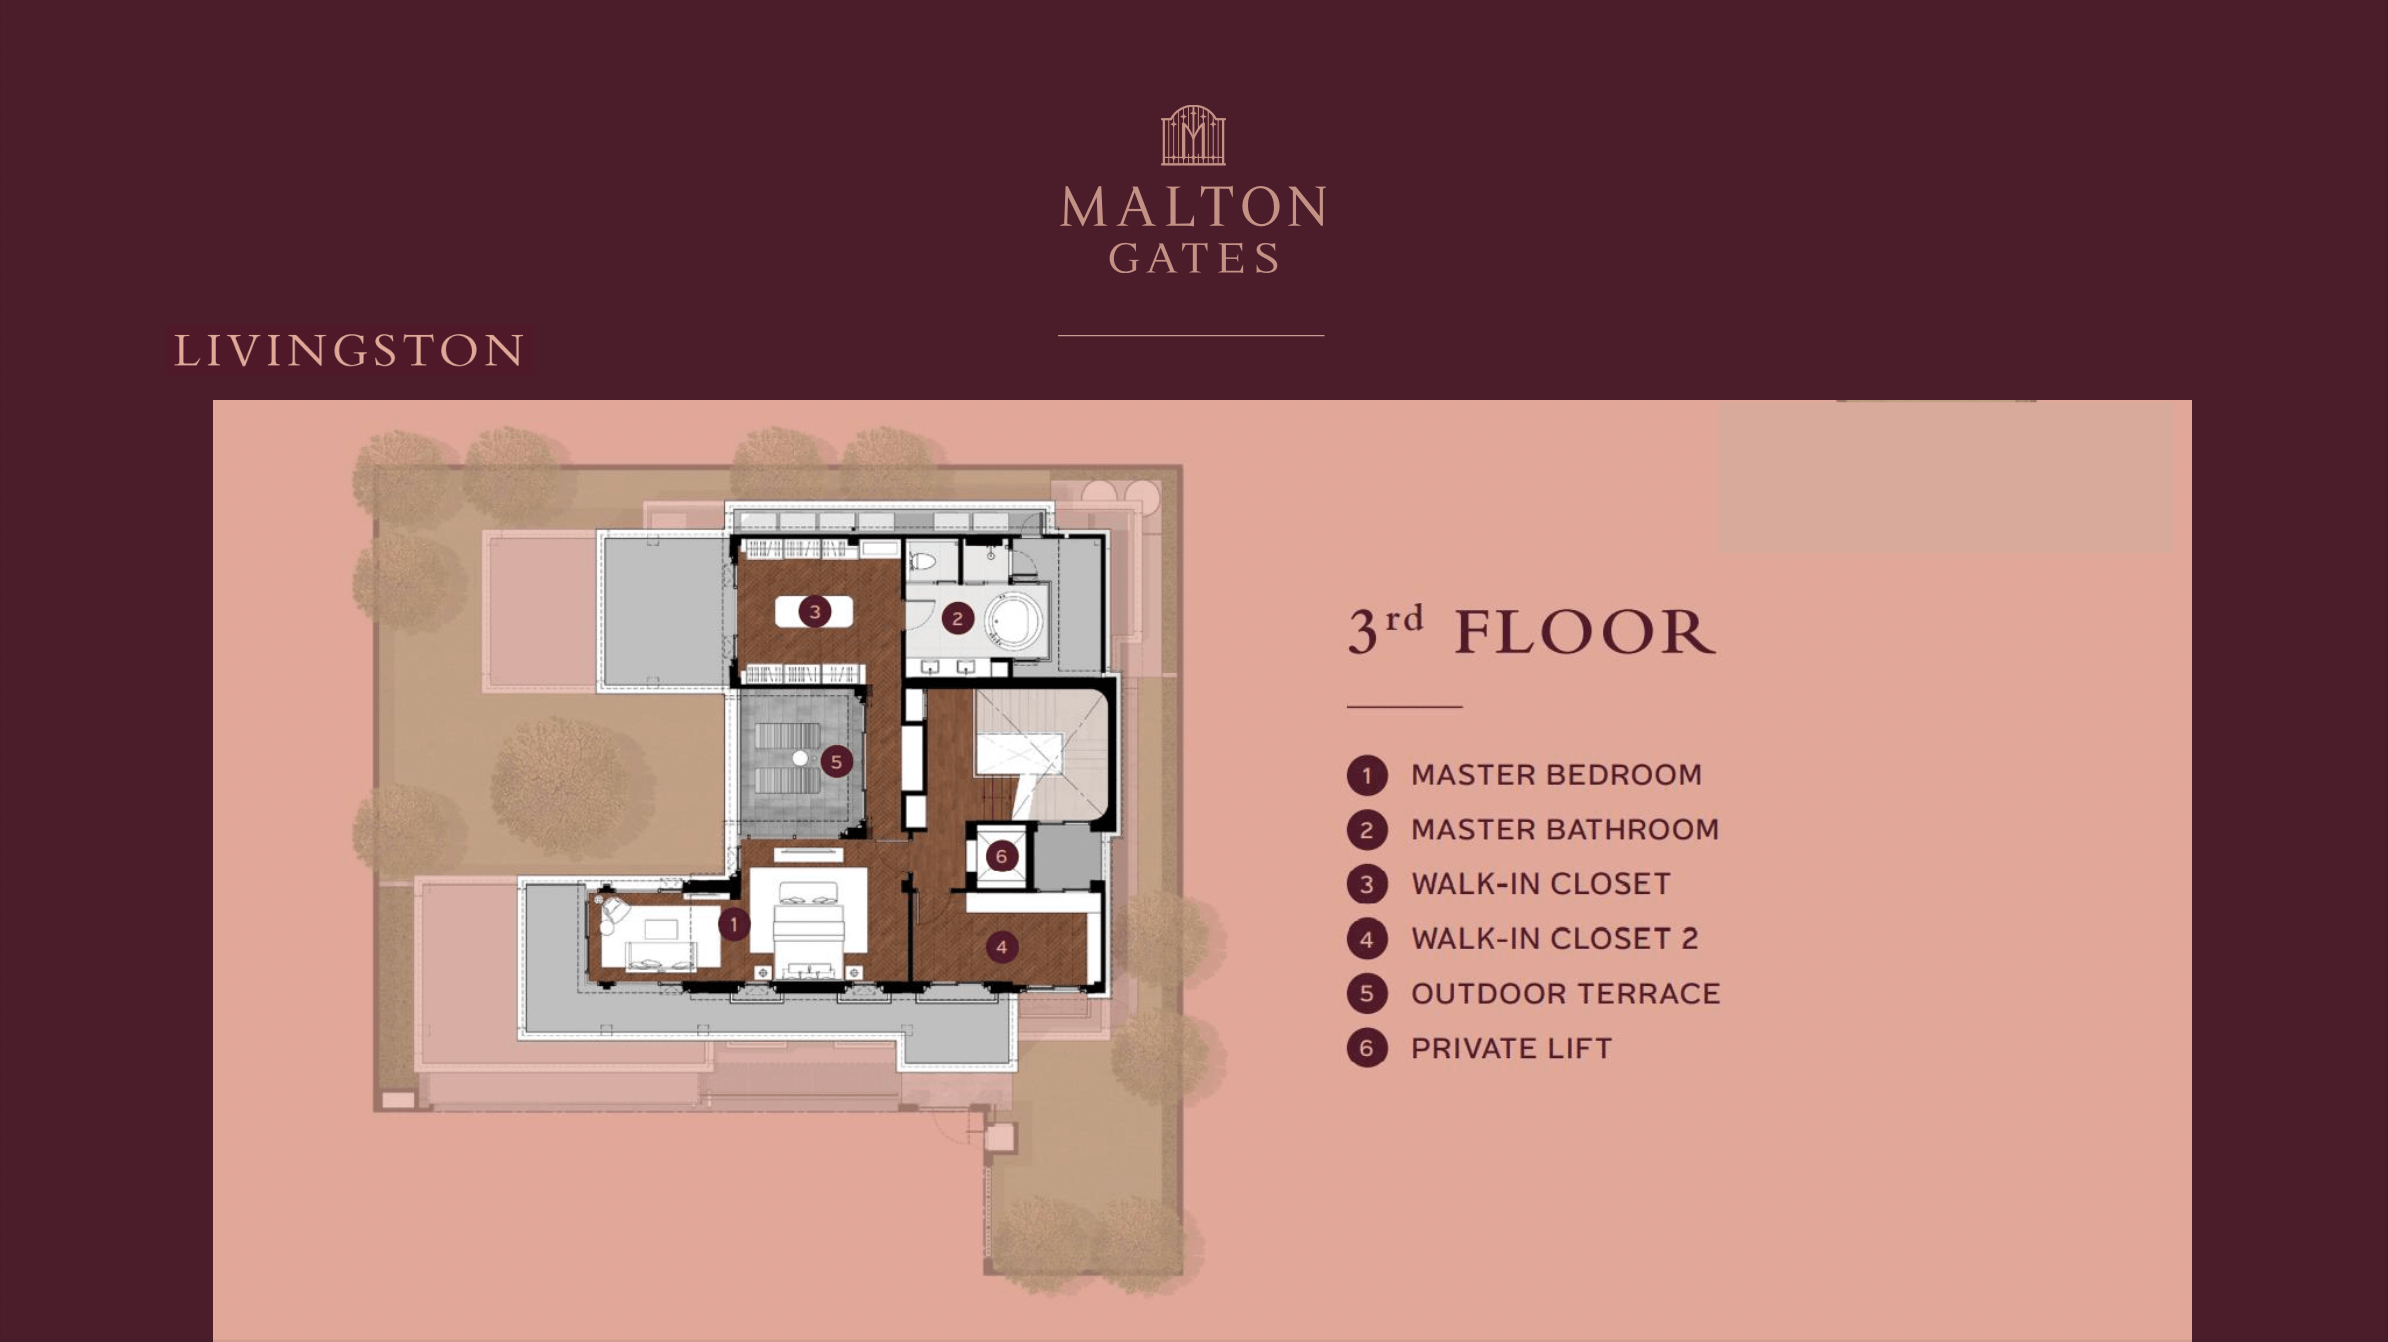 Malton Gates Livington Floor Plan 3